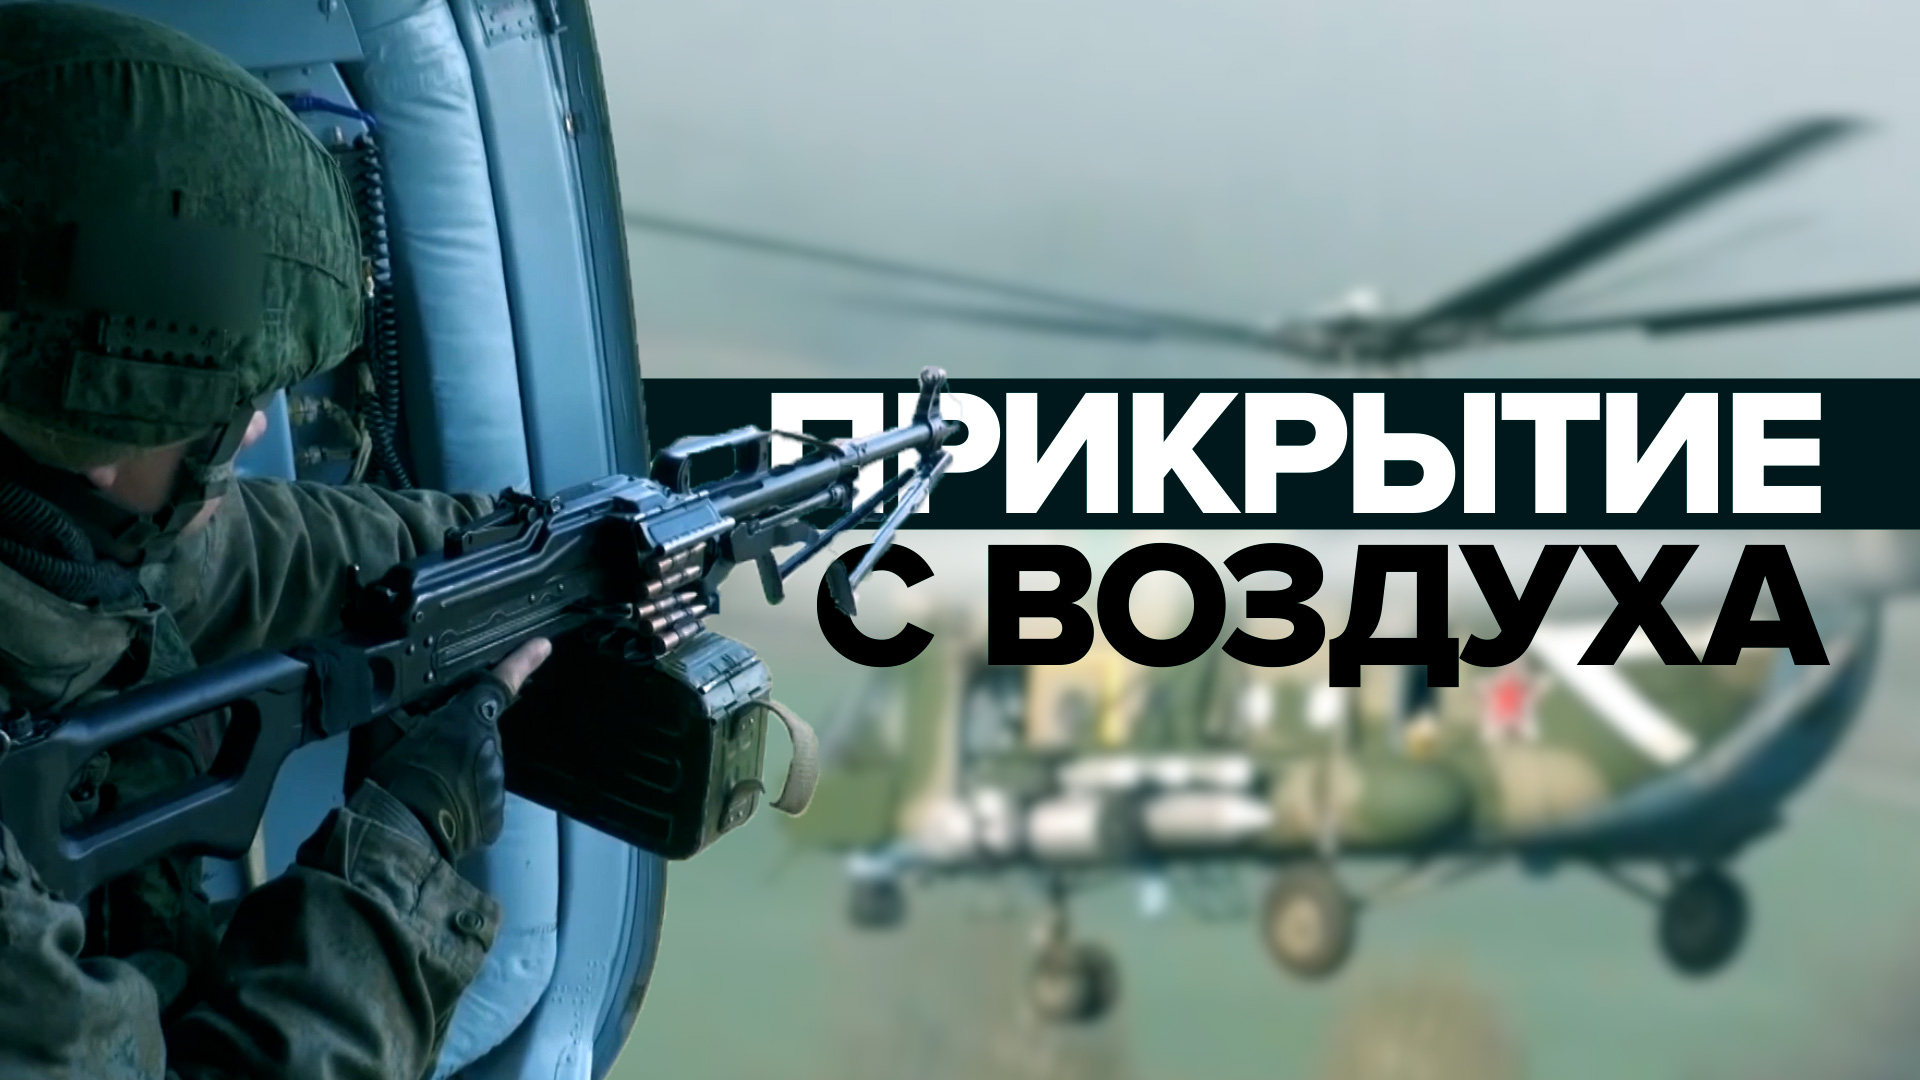 Воздушное прикрытие колонн ВС РФ силами армейской авиации — видео